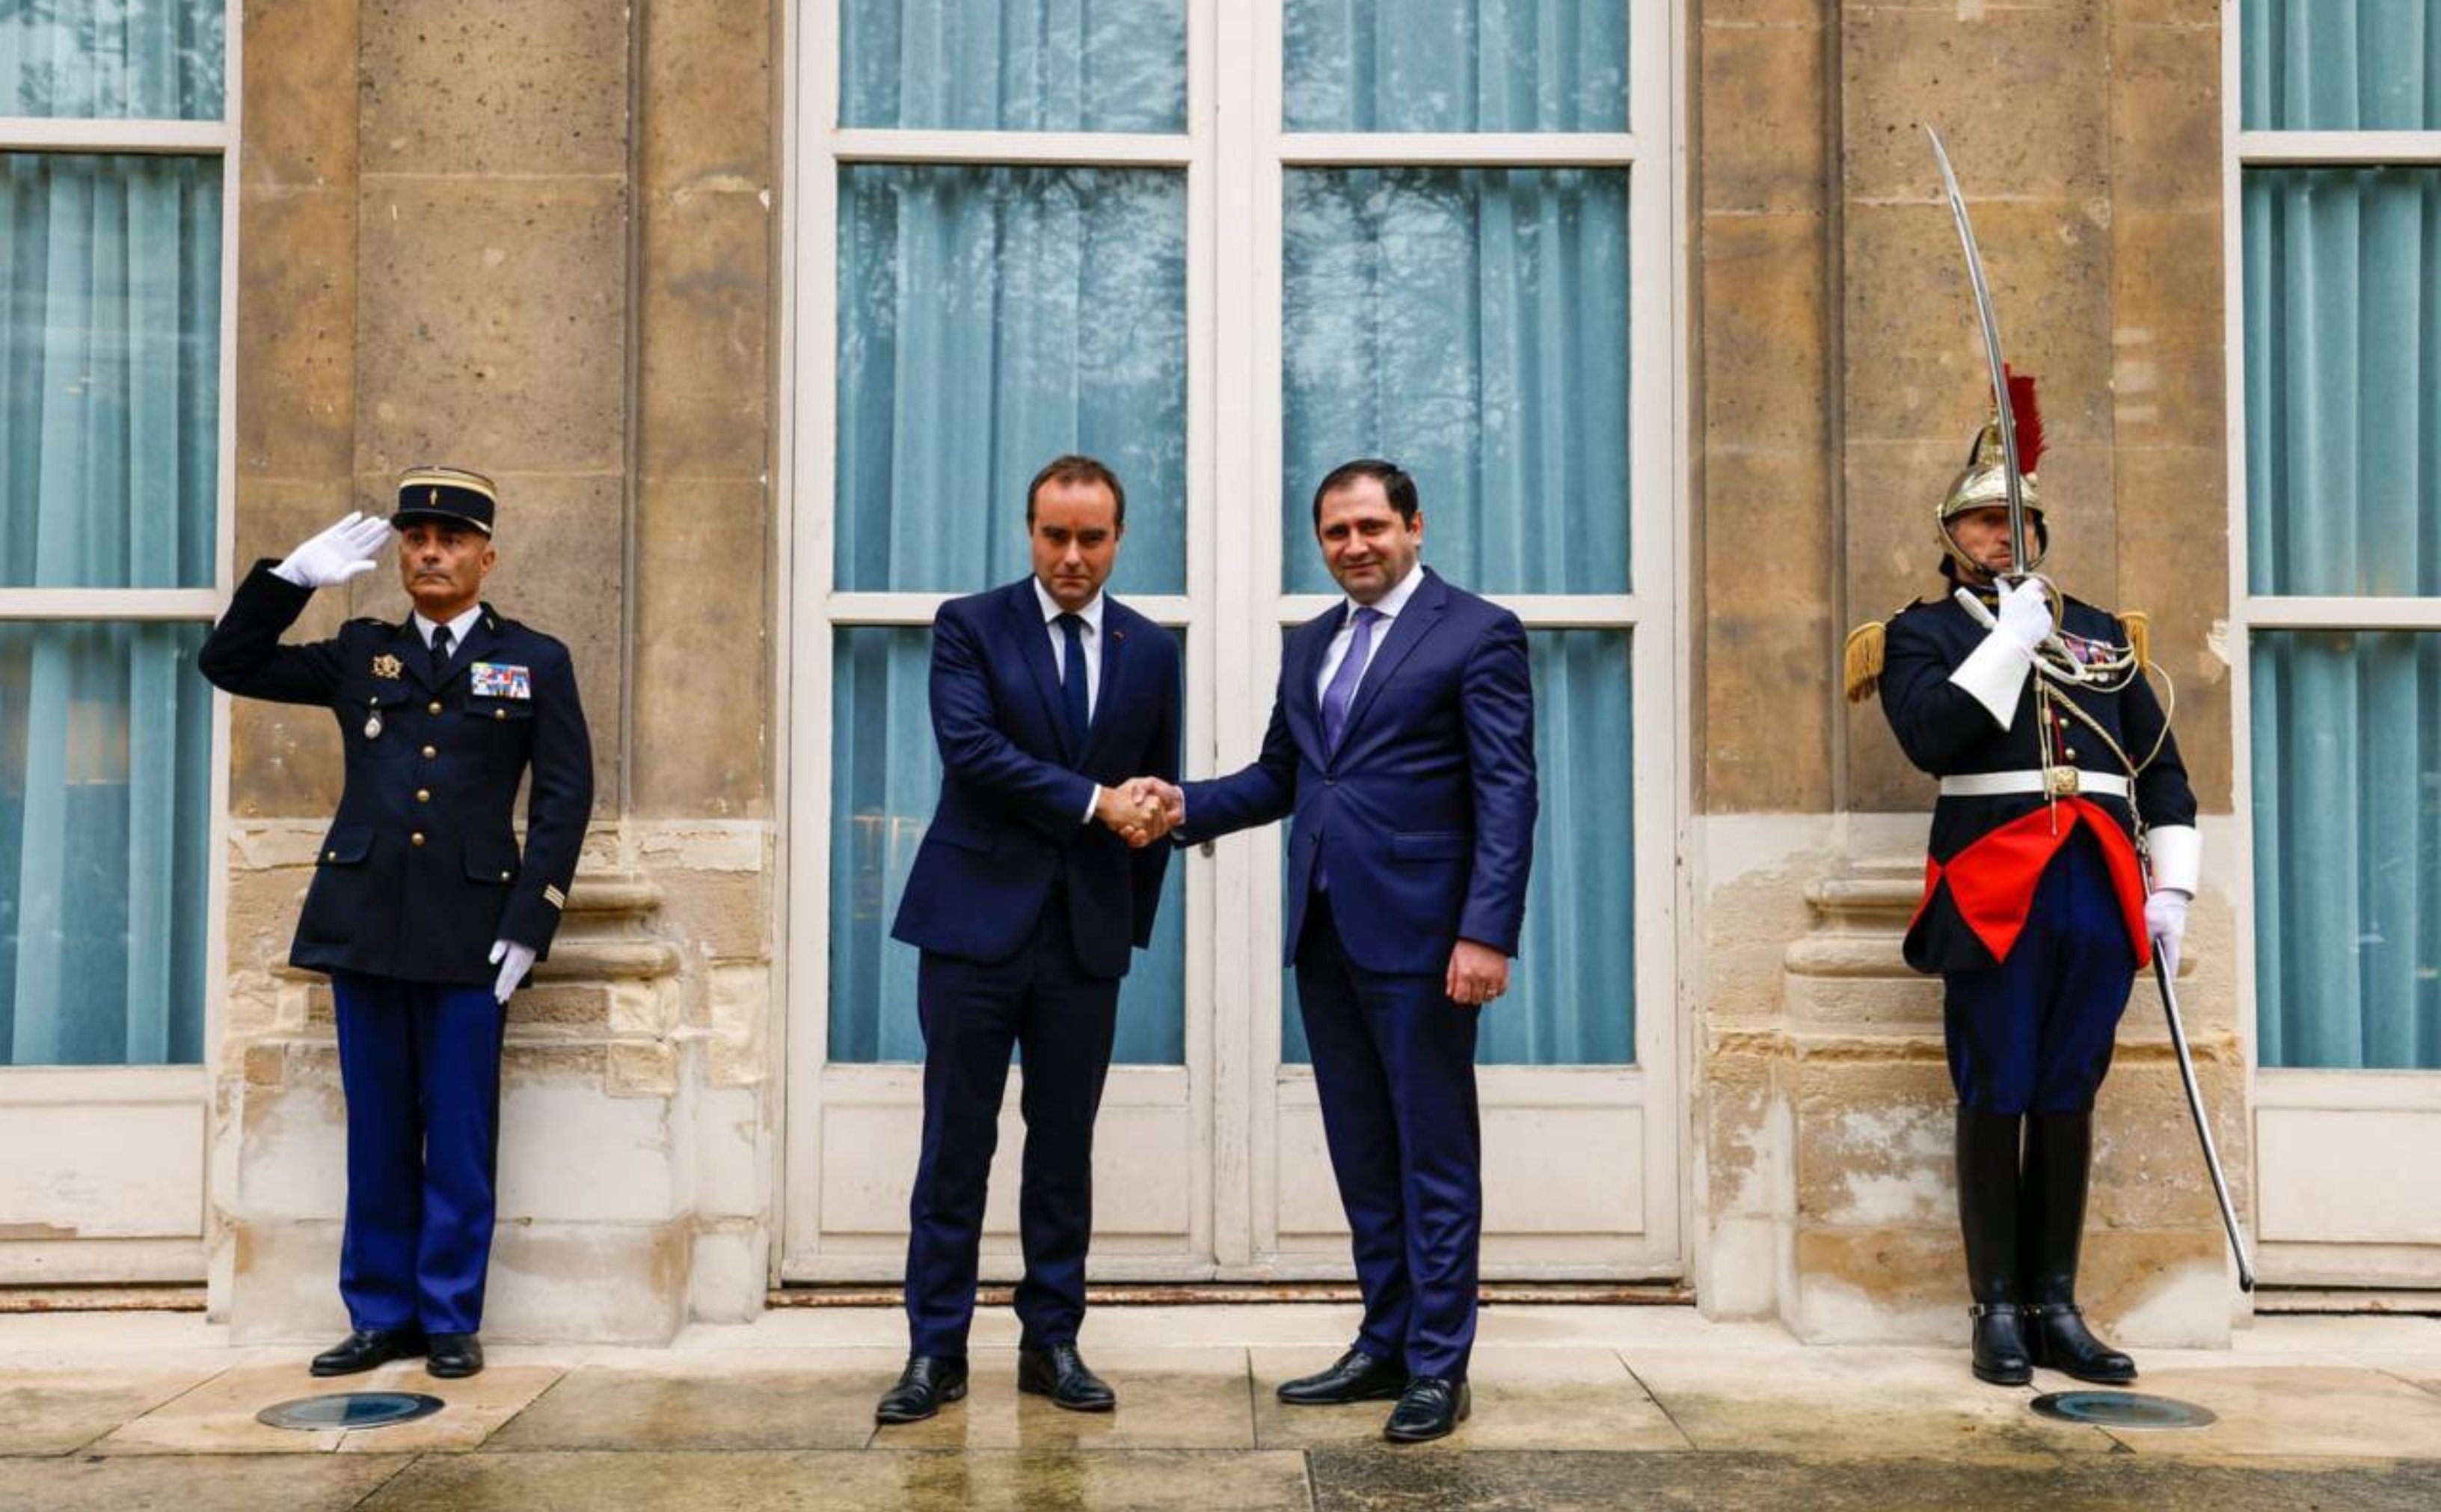 Լըկորնյուն ընդգծել է Ֆրանսիա-Հայաստան պաշտպանական համագործակցության երեք ուղղություններում առաջընթացը